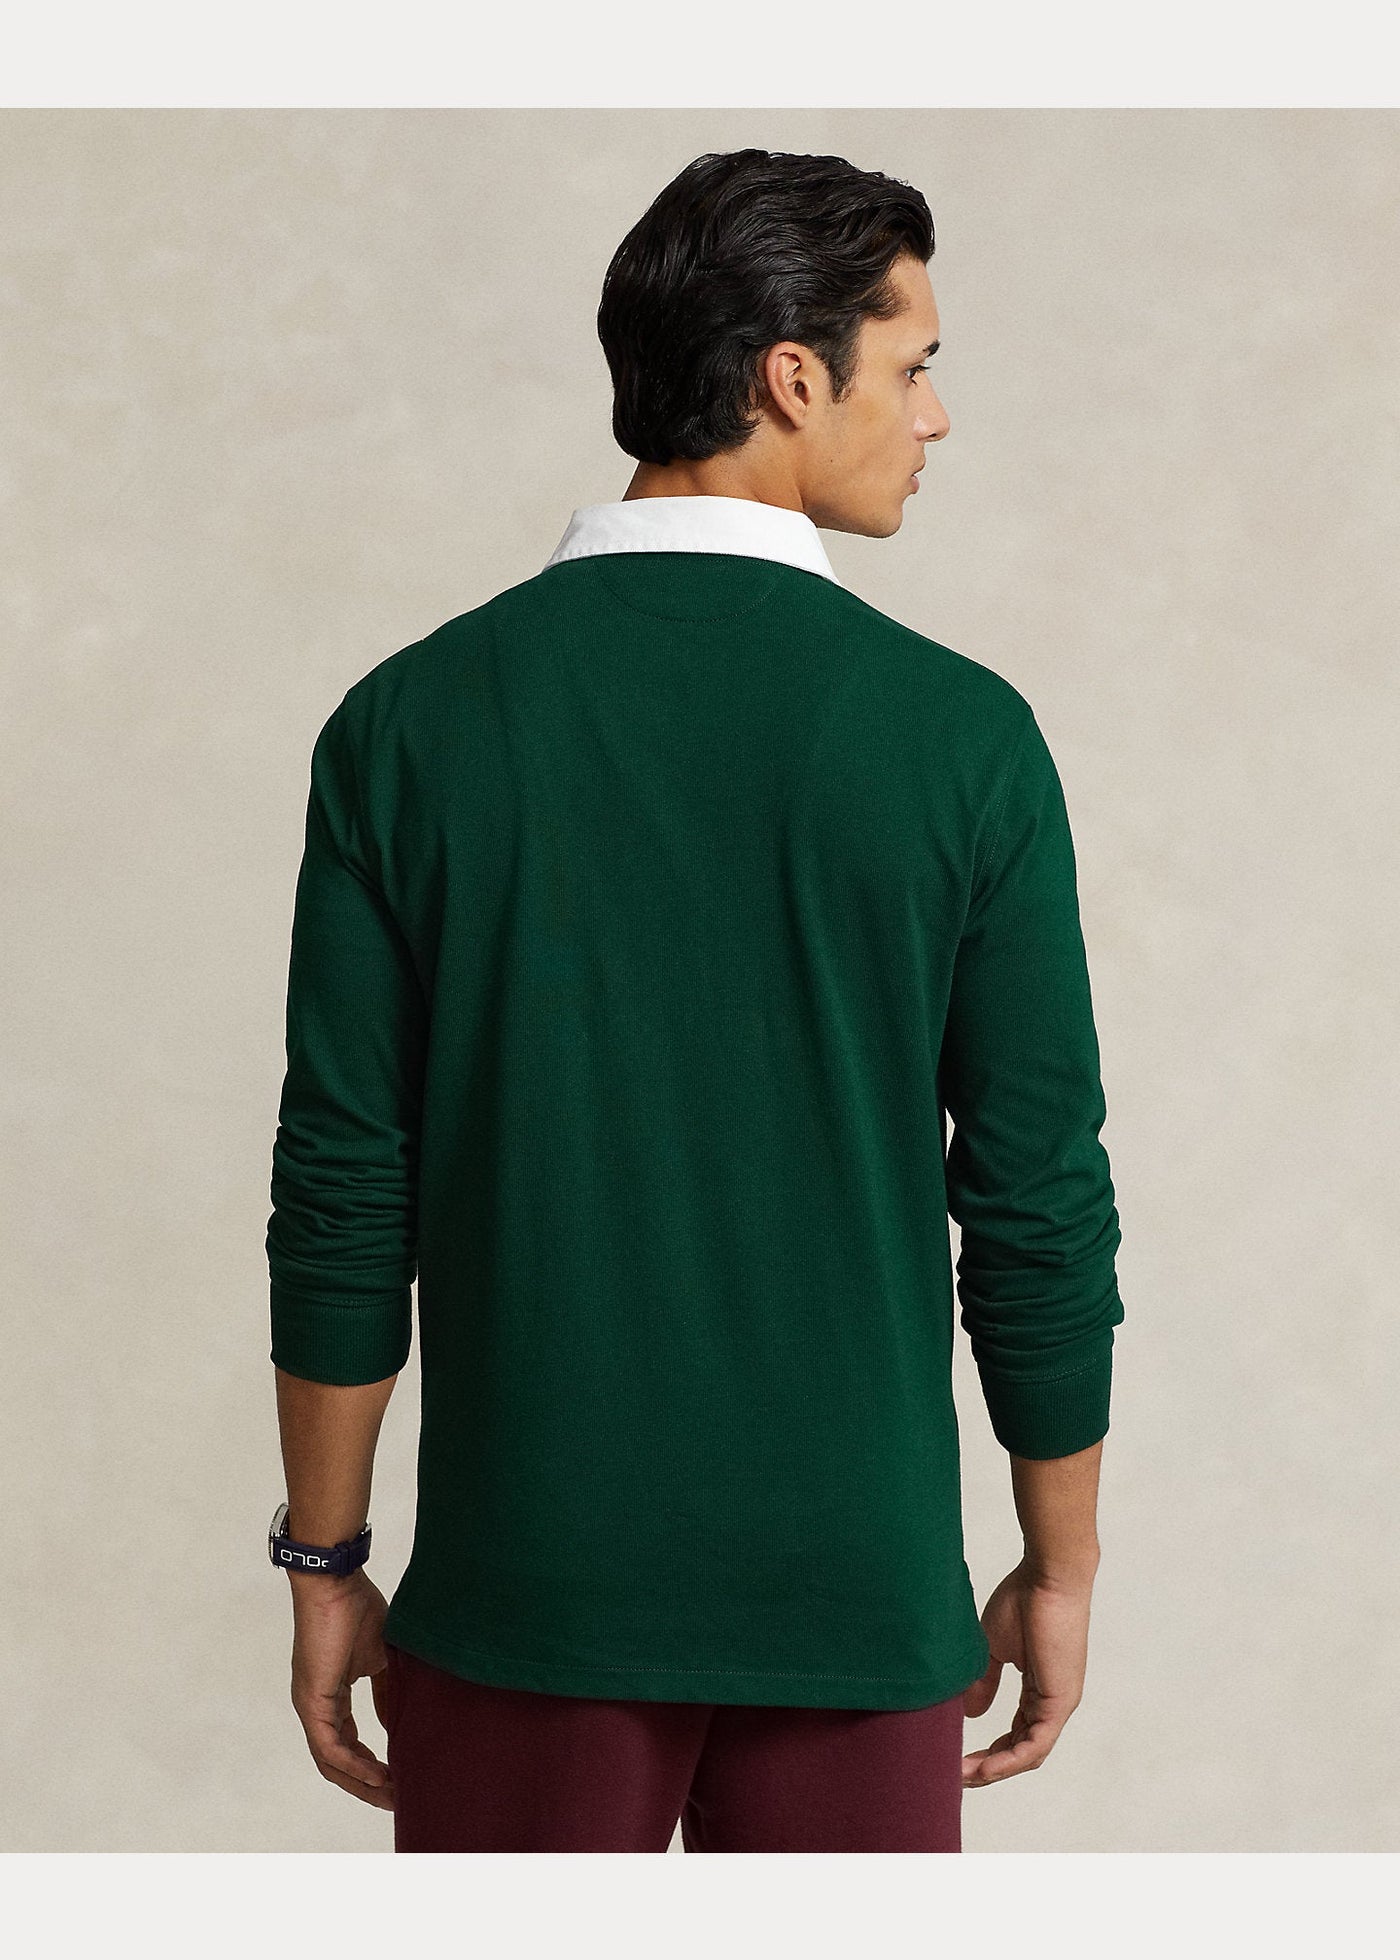 Polo Ralph Lauren La chemise vert de rugby iconique - Lothaire